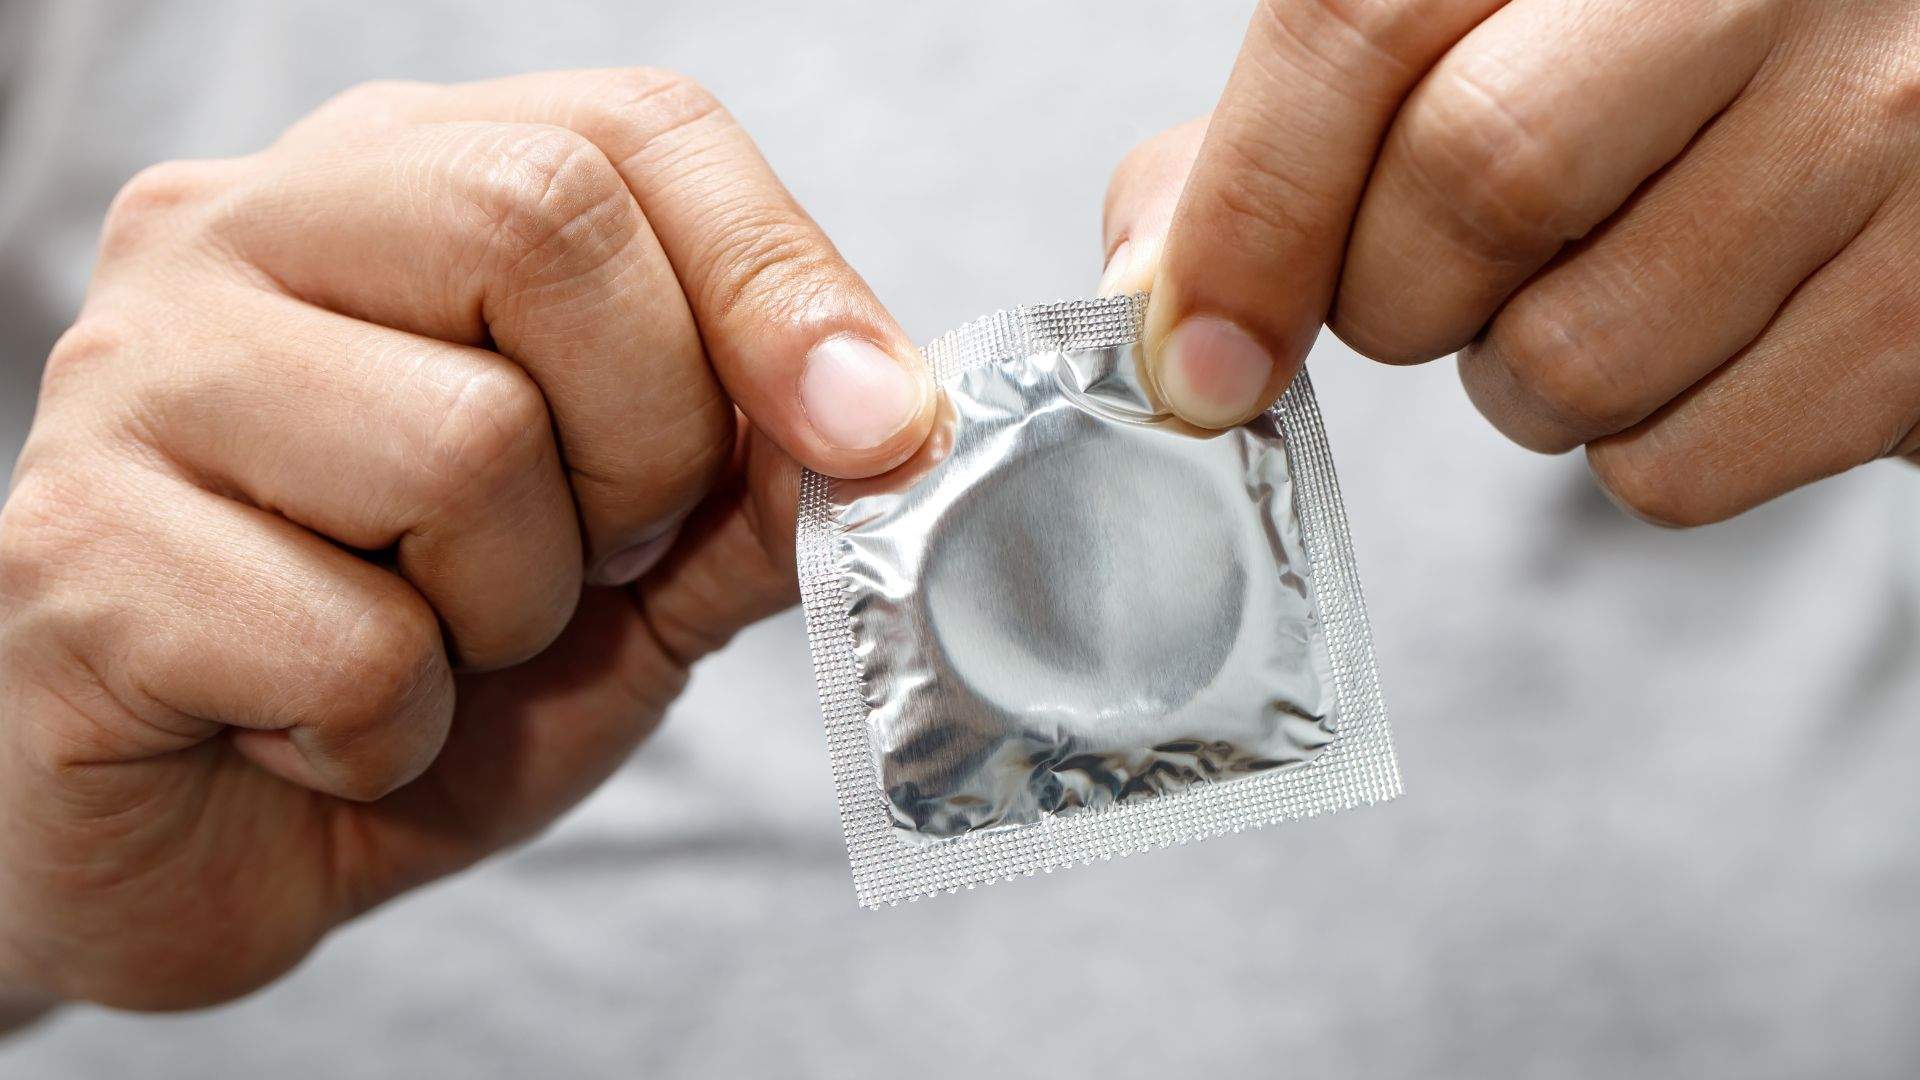 El Suprem considera delicte treure's el condó sense permís enmig d'una relació sexual